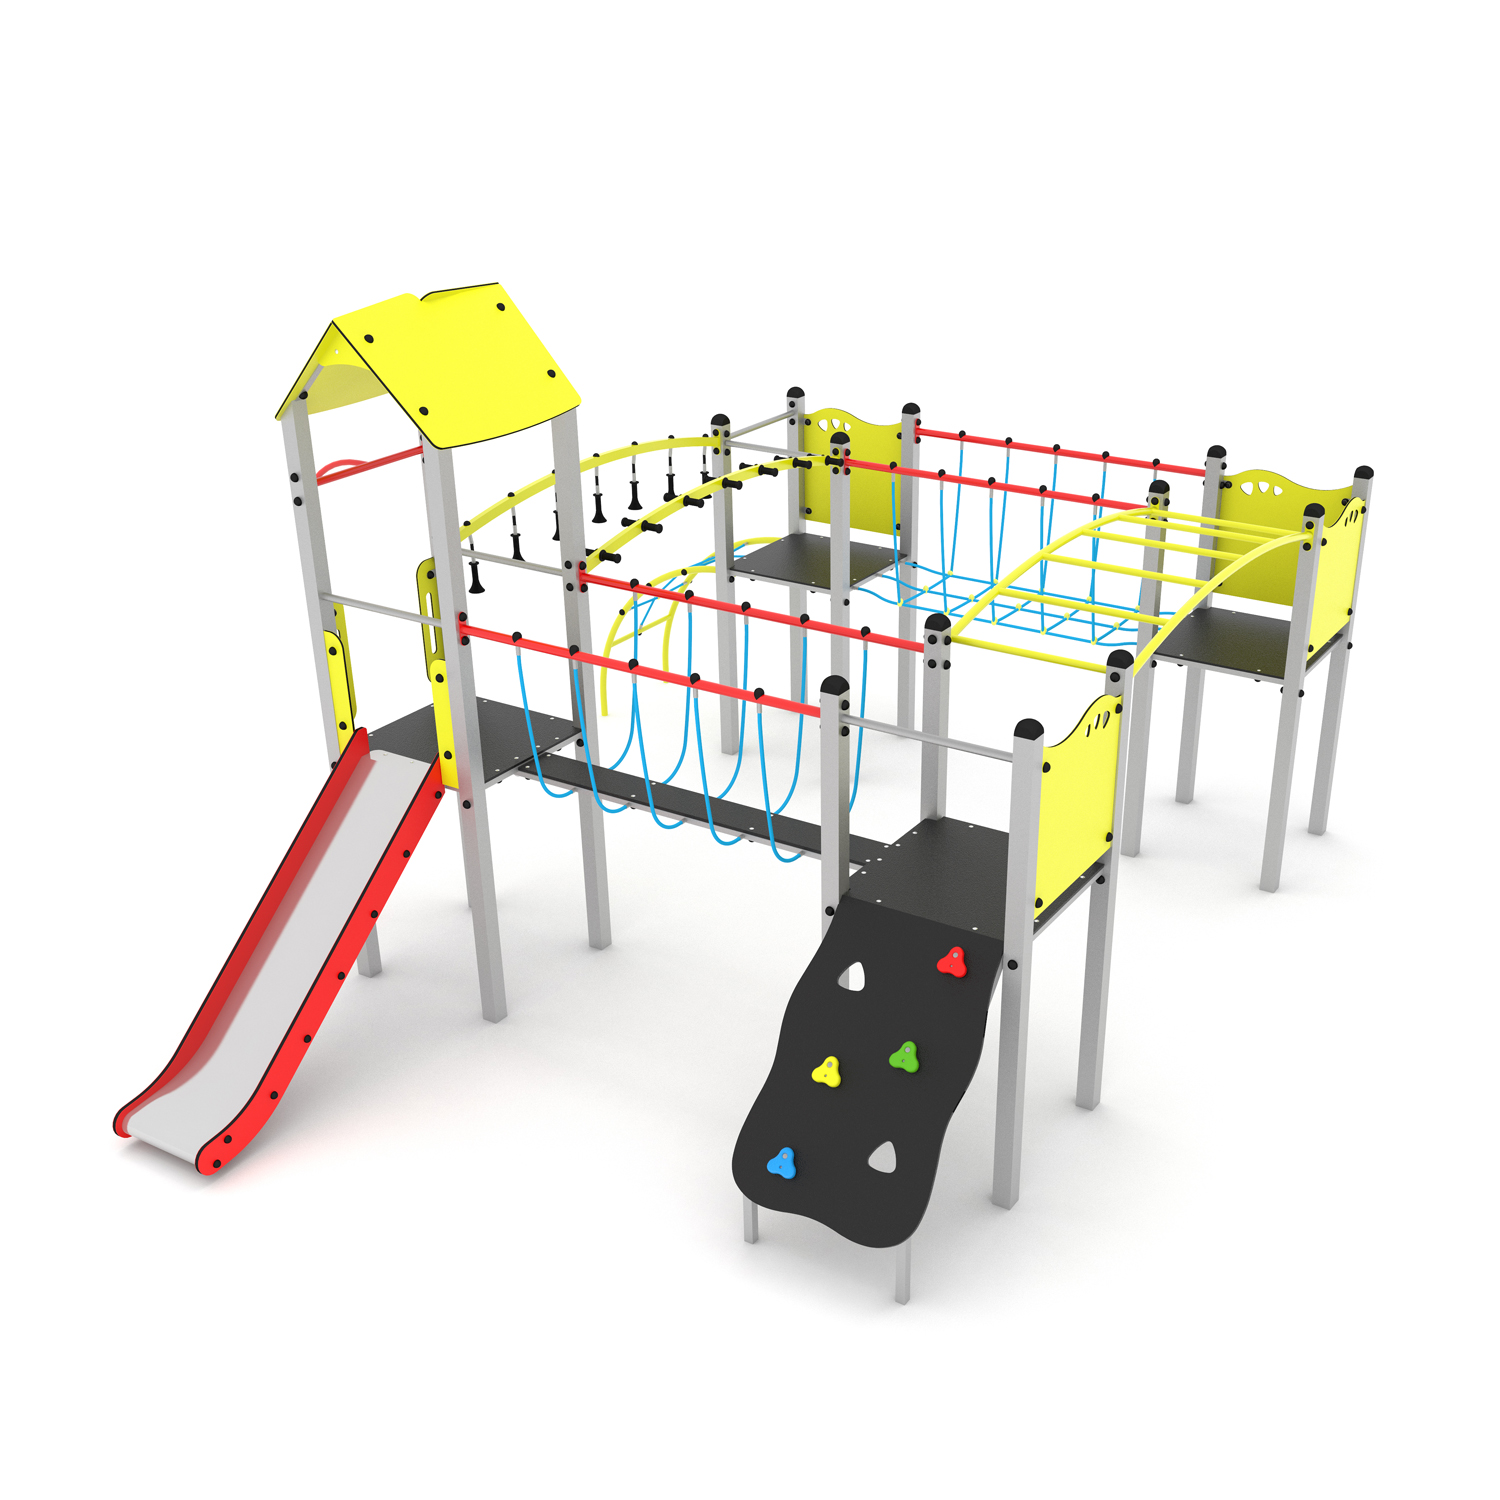 CGS Plieninis daugiafunkcinis vaikų žaidimų aikštelės įrenginys PD-VP-009